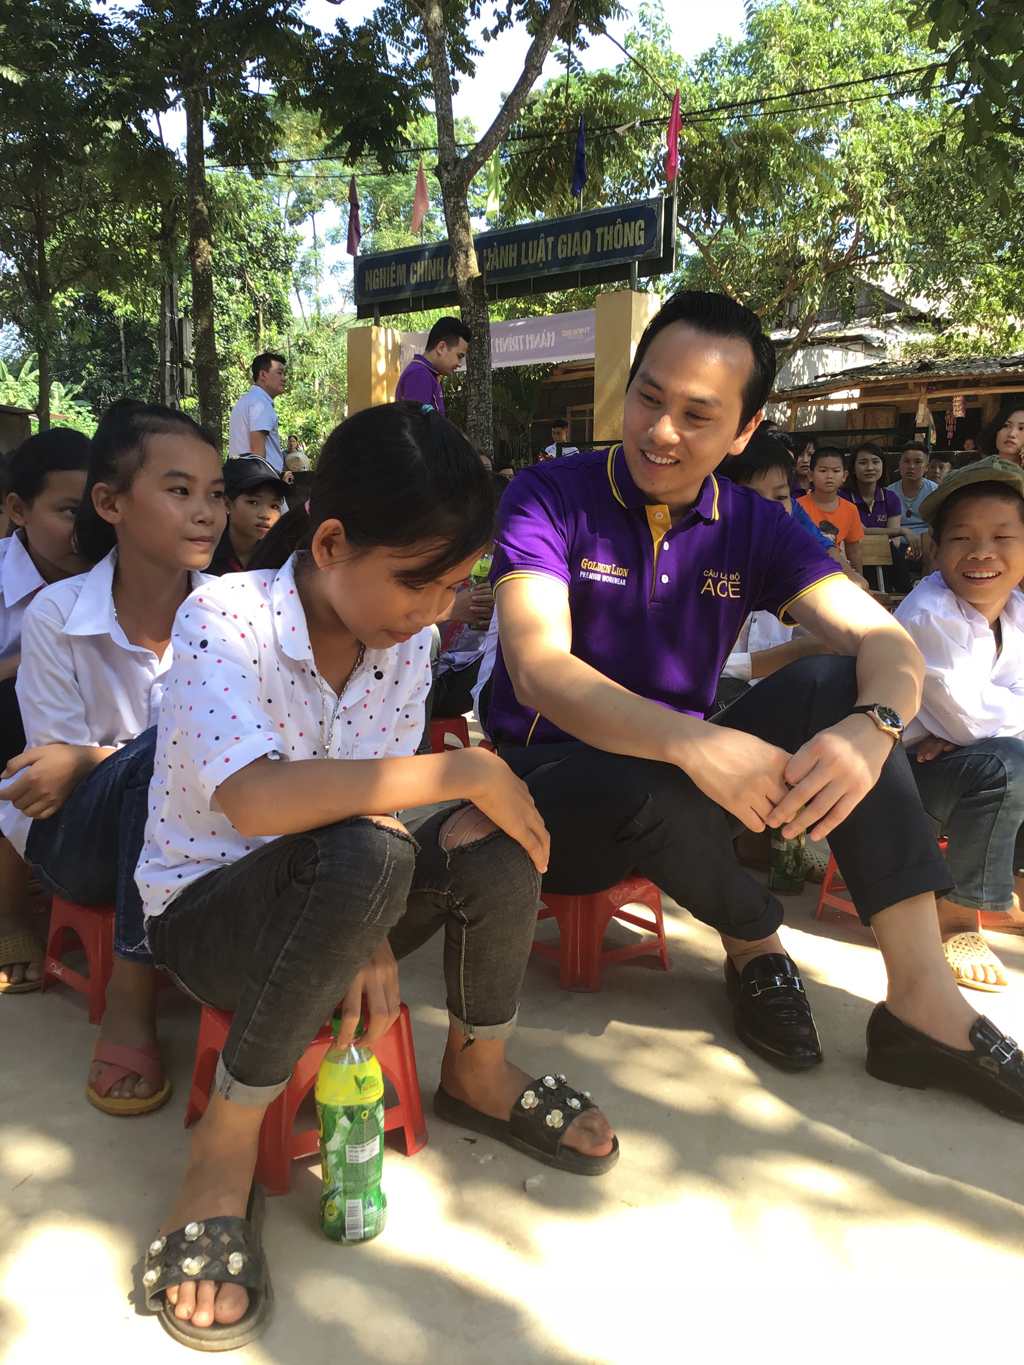 Doanh nhân Nguyễn Mạnh Hà trò chuyện cùng các em nhỏ tại quê nhà